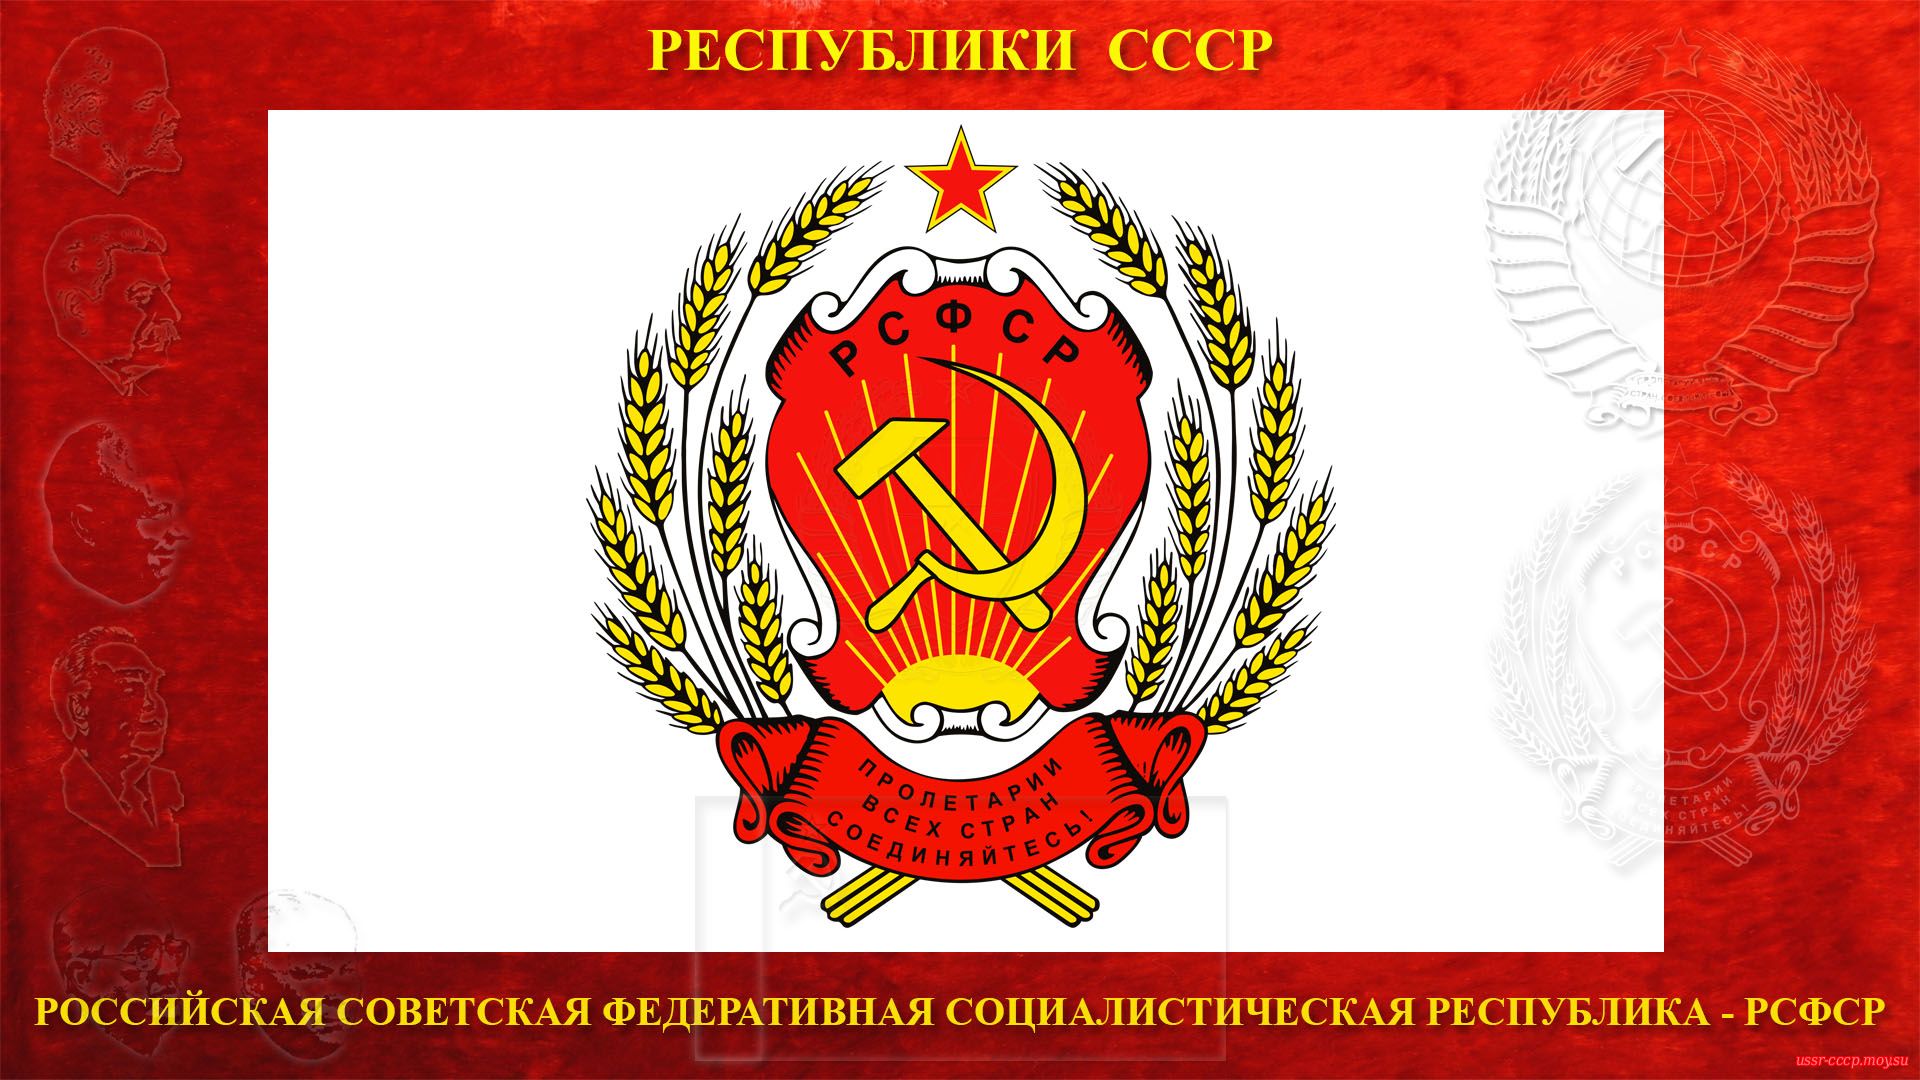 Герб Российской Советской Федеративной Социалистической Республики (РСФСР) (1978—1991).